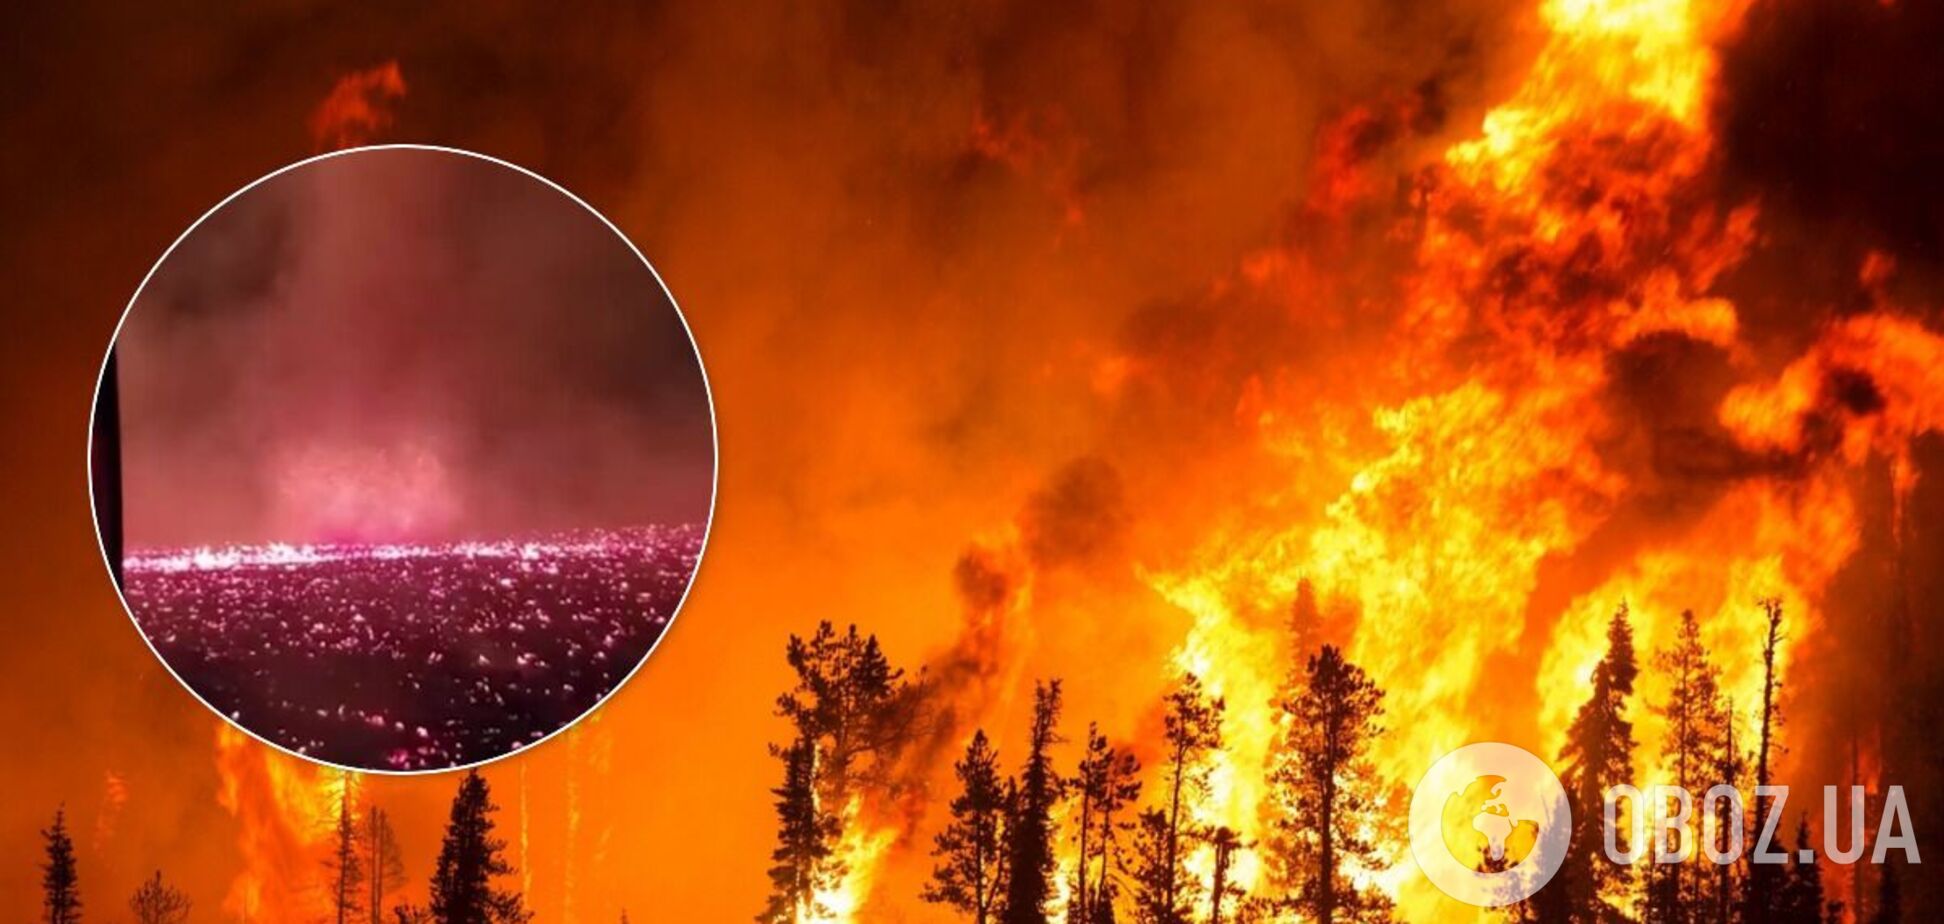 Лесные пожары в Калифорнии вызвали огненный смерч. Видео